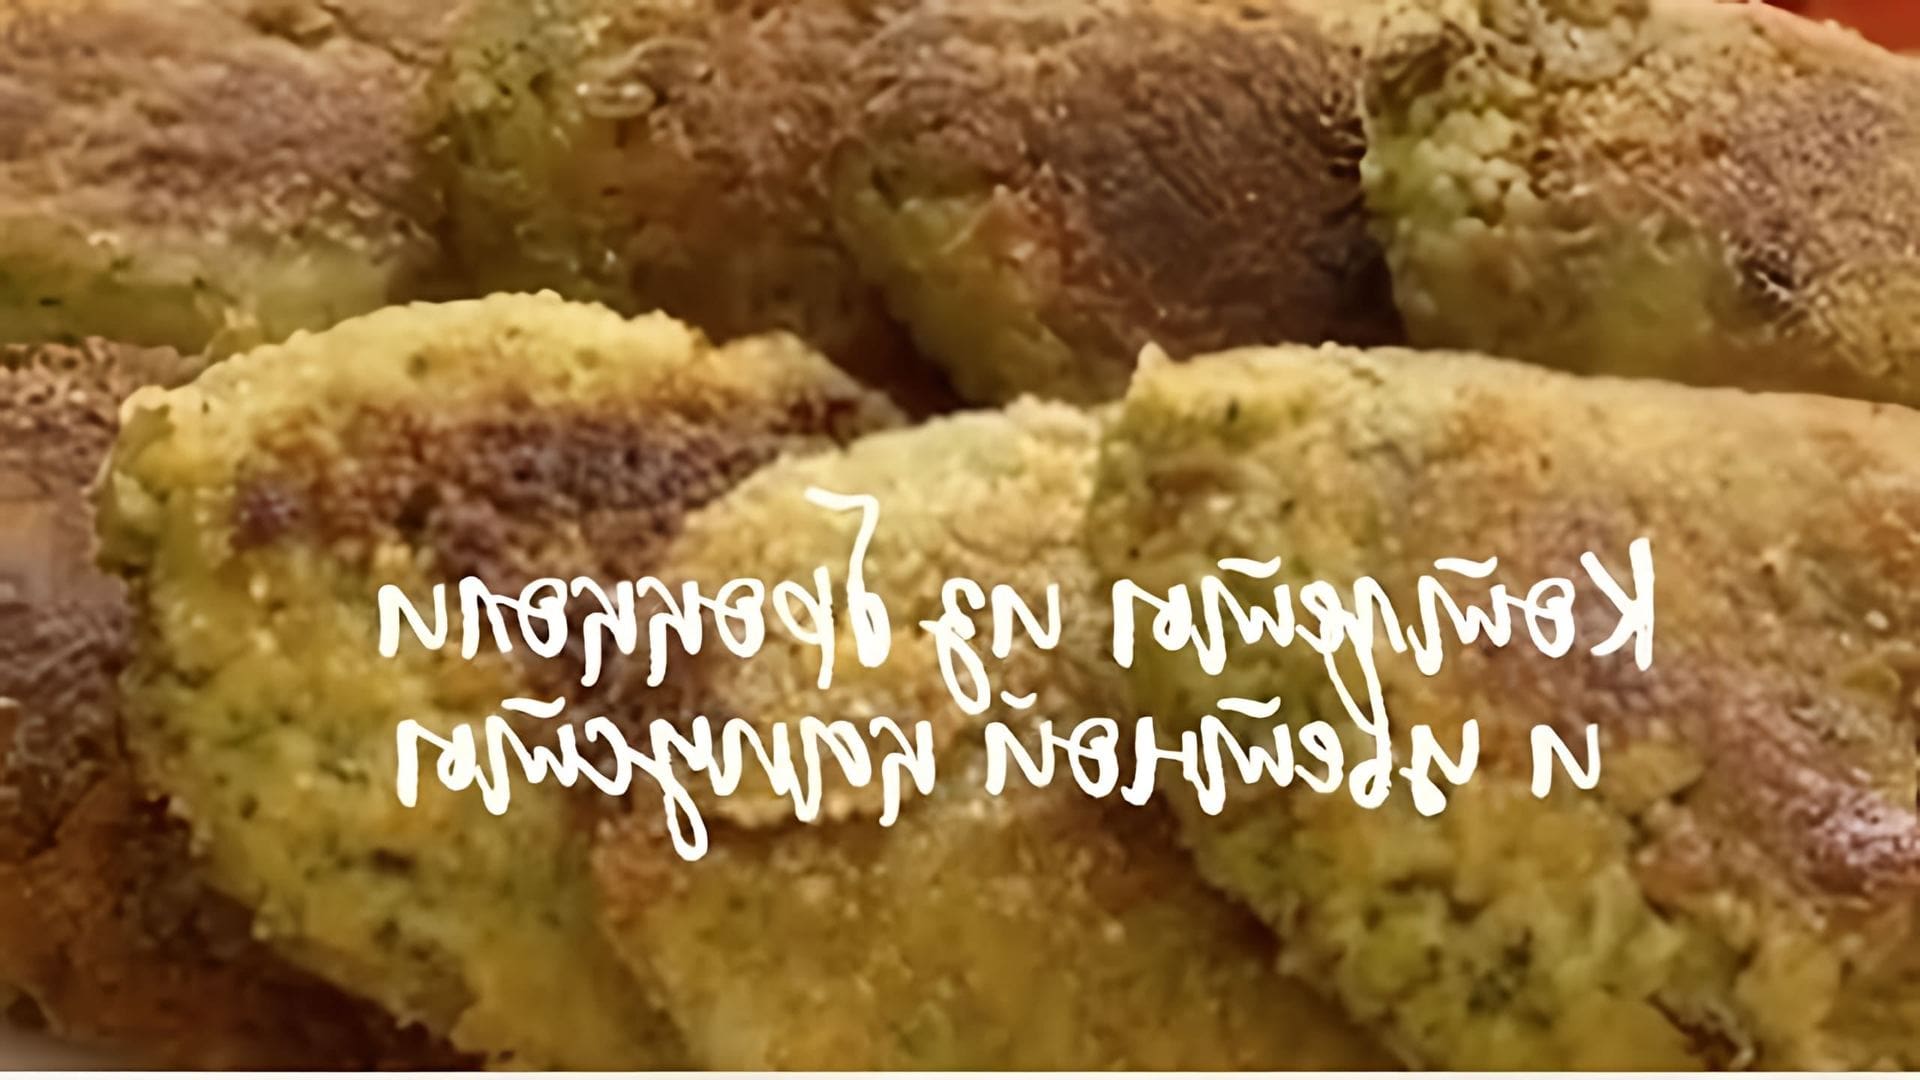 В этом видео демонстрируется процесс приготовления диетических котлет из цветной капусты и брокколи